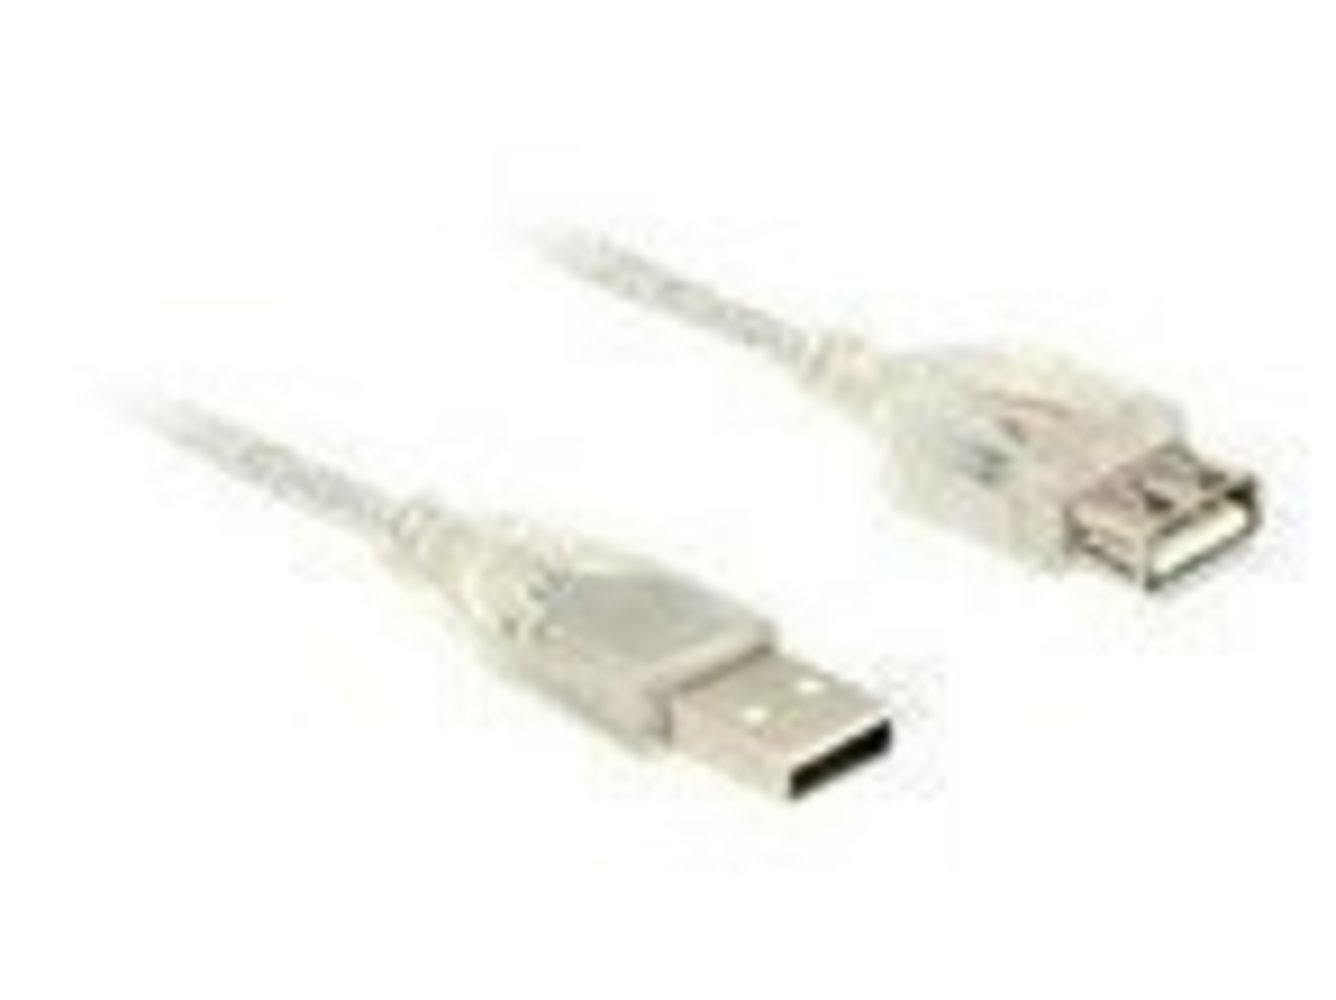 DELOCK Verlängerungskabel USB 2.0 Typ-A Stecker > USB 2.0 Typ-A Buchse 0.5 m transparent - hochwertiges und langlebiges USB Verlängerungskabel